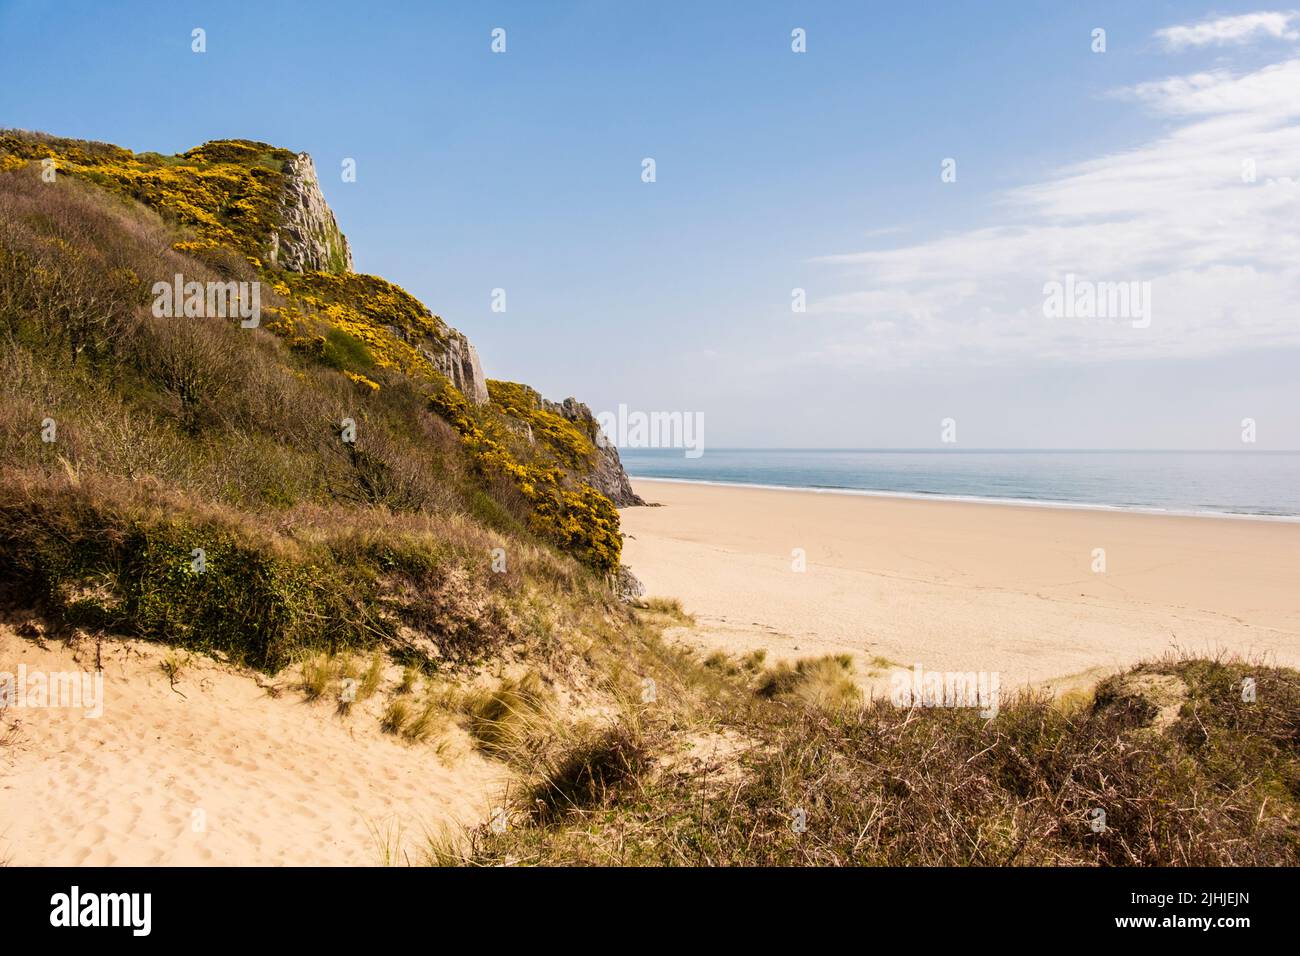 Vue depuis Nichols Burrows jusqu'à la plage de sable d'Oxwich Bay sur la péninsule de Gower, Swansea, West Glamourgan, pays de Galles du Sud, Royaume-Uni, Grande-Bretagne Banque D'Images